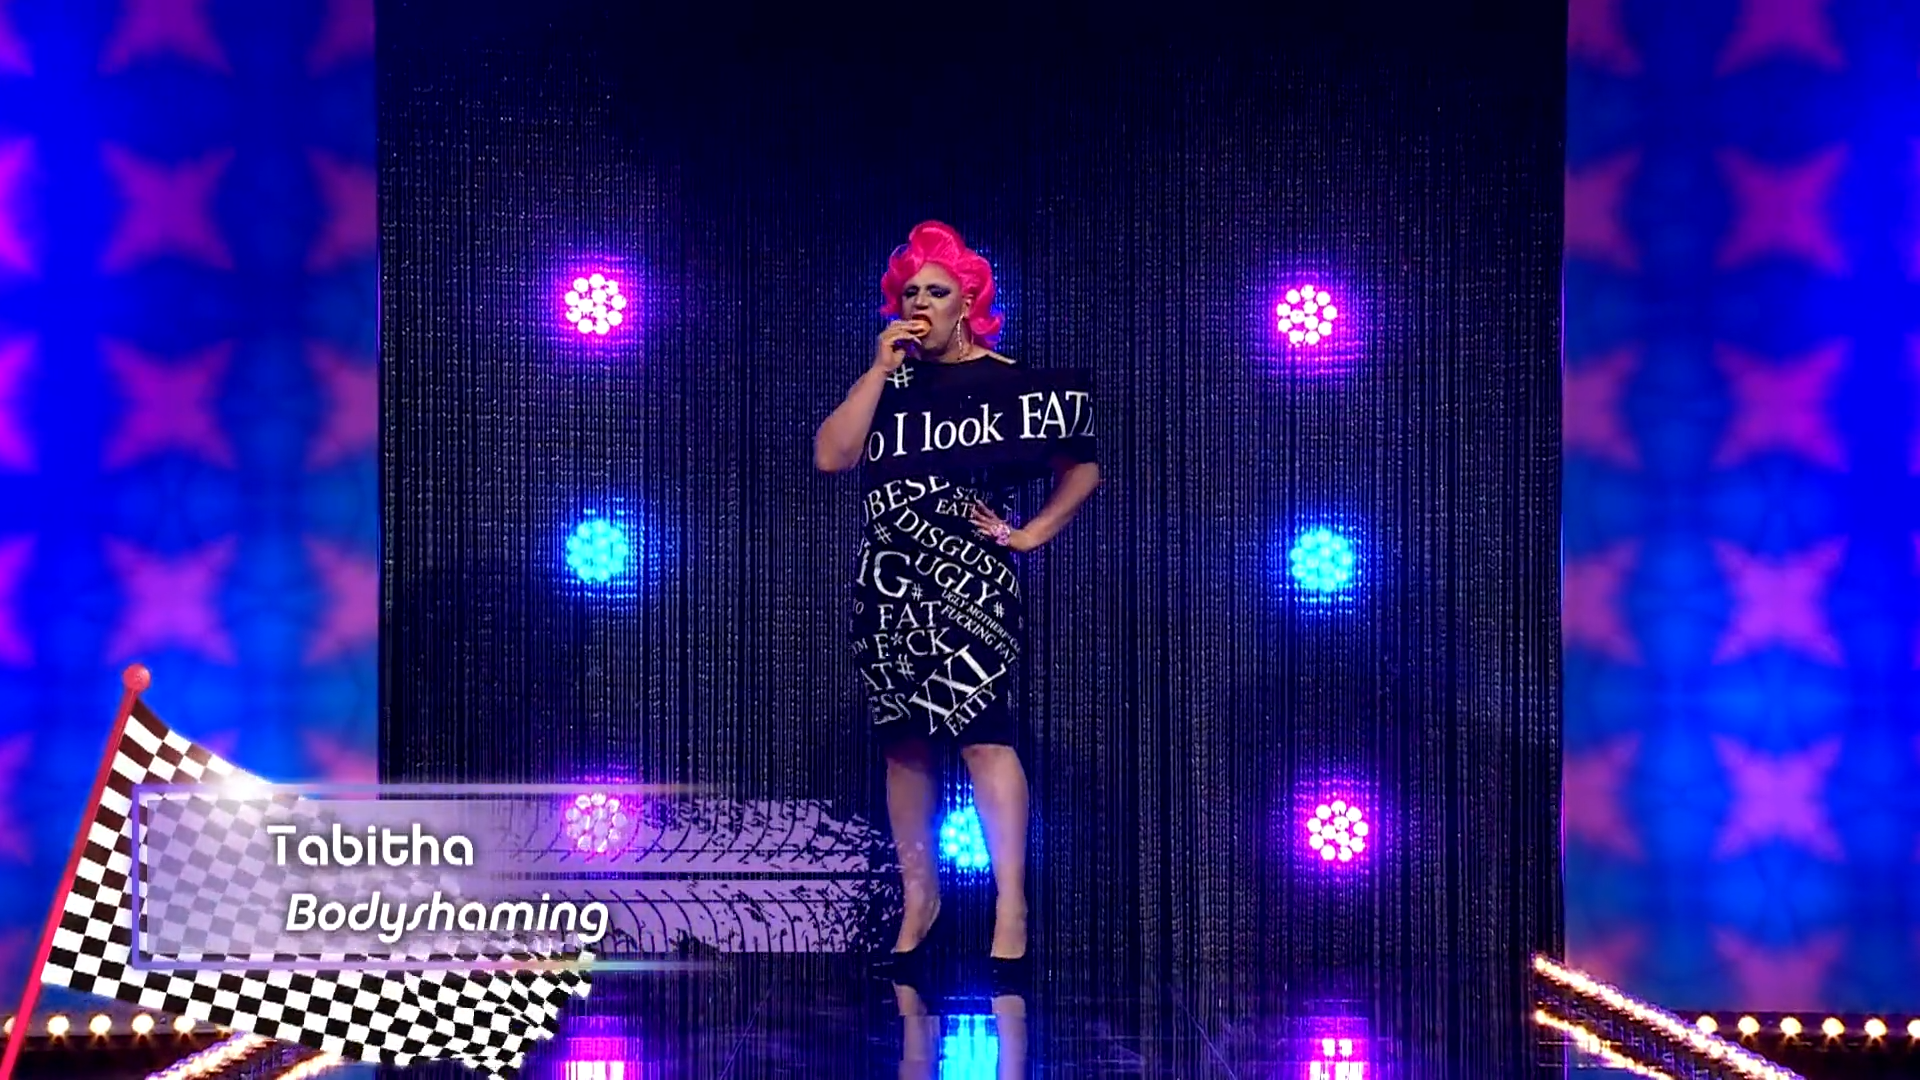 Cena de Drag Race Holland, mostra a drag queen Tabitha na passarela. Ele é branca, gorda, usa peruca rosa e vestido preto com escritas em branco. Ela come alguma coisa, com o alimento sendo mordido. No canto inferior esquerdo, vemos uma legenda escrito Tabitha e Bodyshaming.